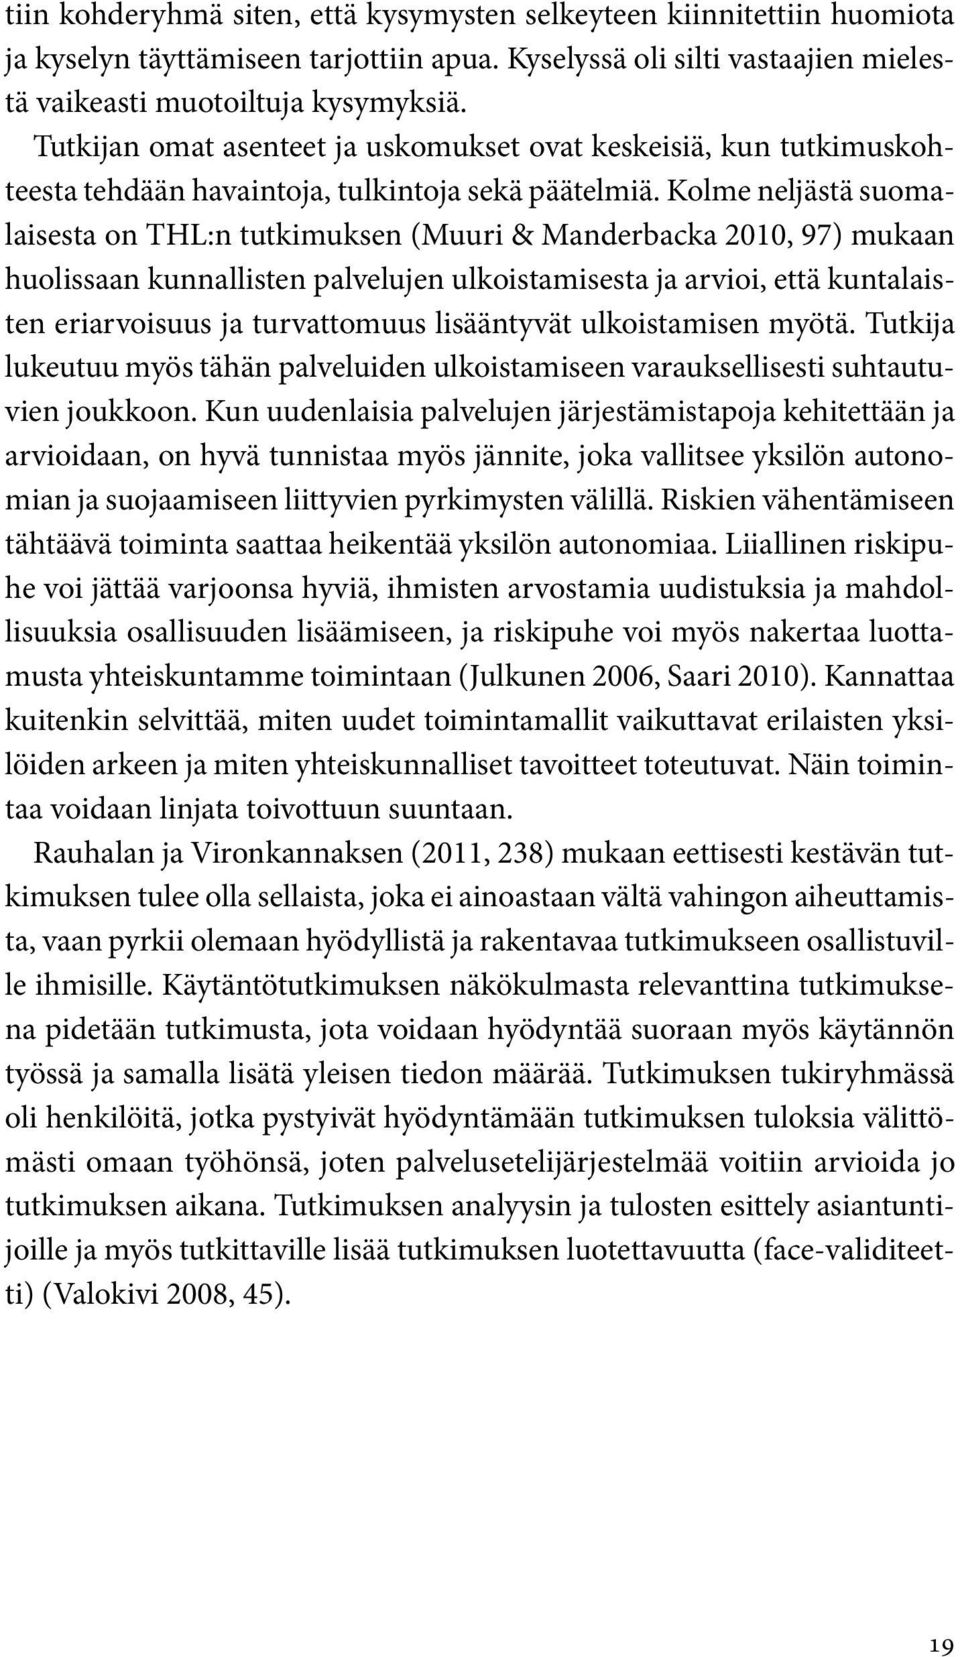 Kolme neljästä suomalaisesta on THL:n tutkimuksen (Muuri & Manderbacka 2010, 97) mukaan huolissaan kunnallisten palvelujen ulkoistamisesta ja arvioi, että kuntalaisten eriarvoisuus ja turvattomuus